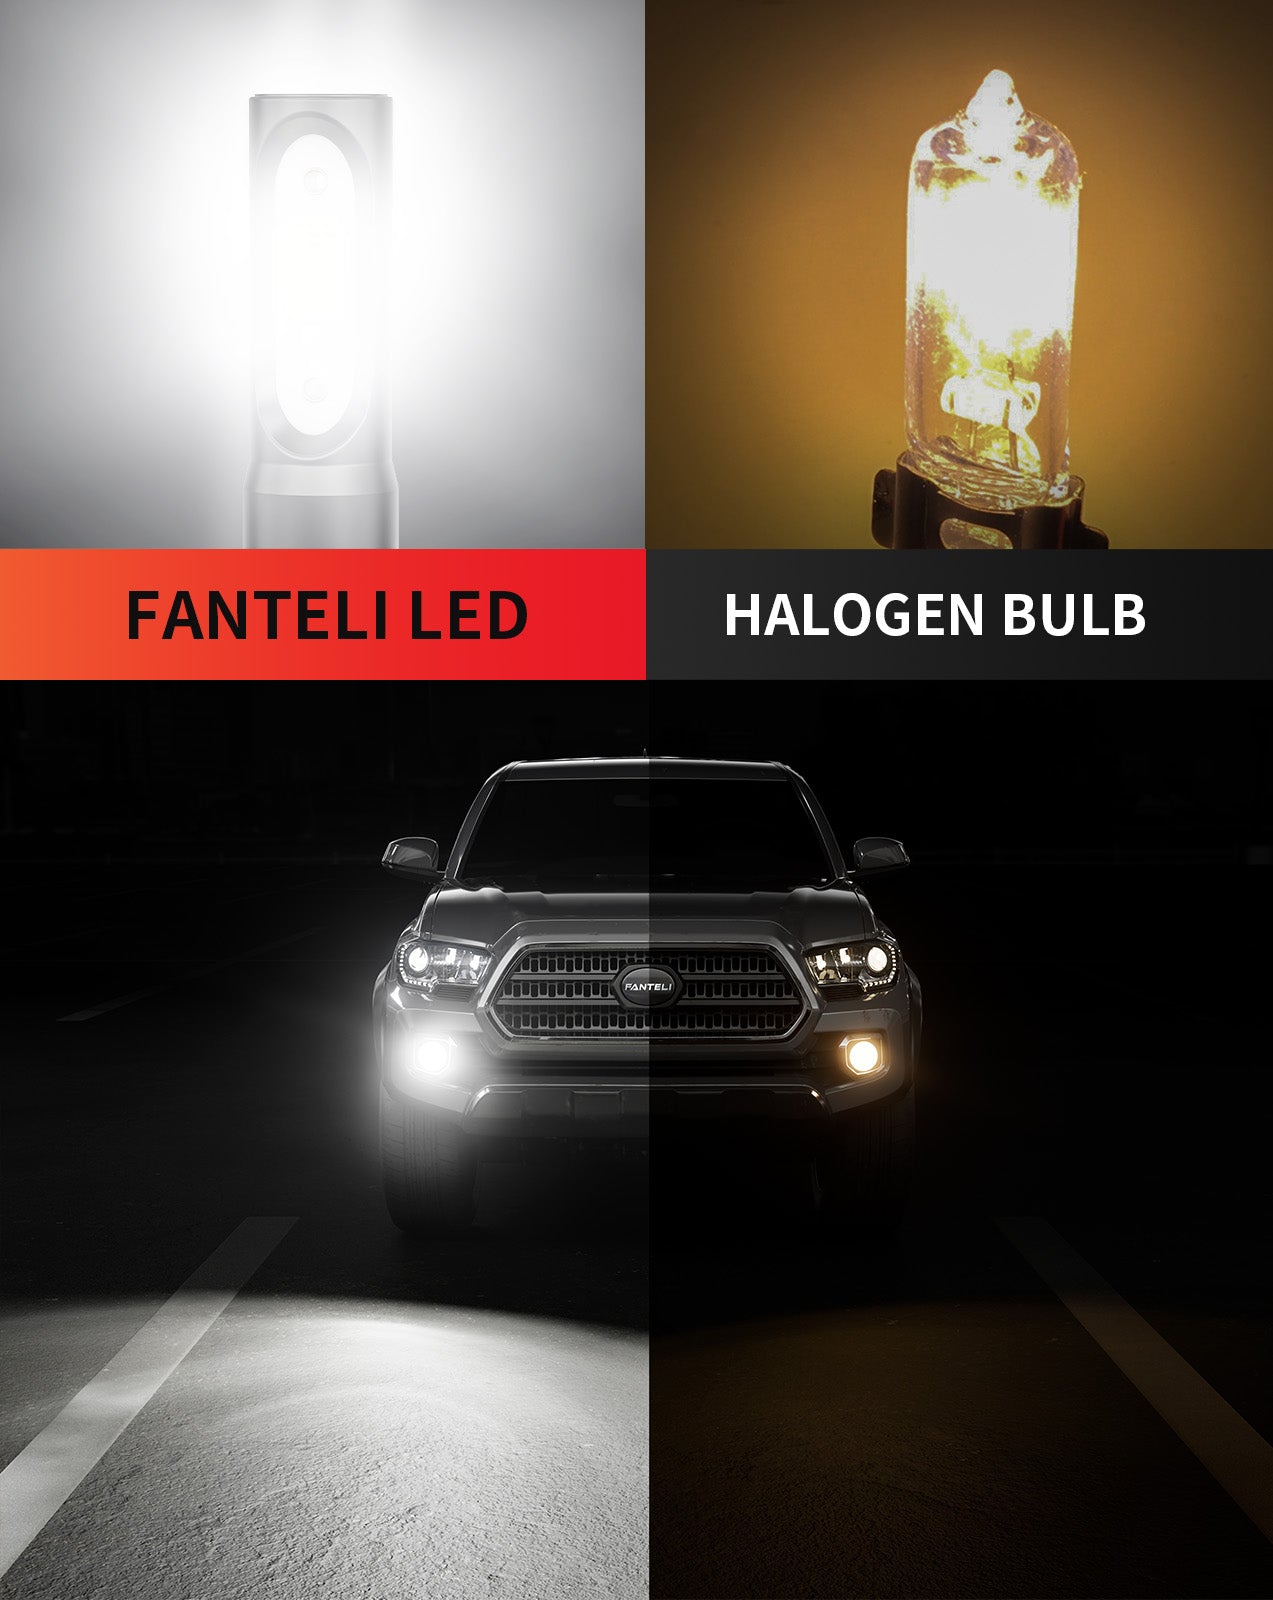 FANTELI H11 LED Fog Light, 12000LM 400% Brighter H16 H8 LED Fog Light